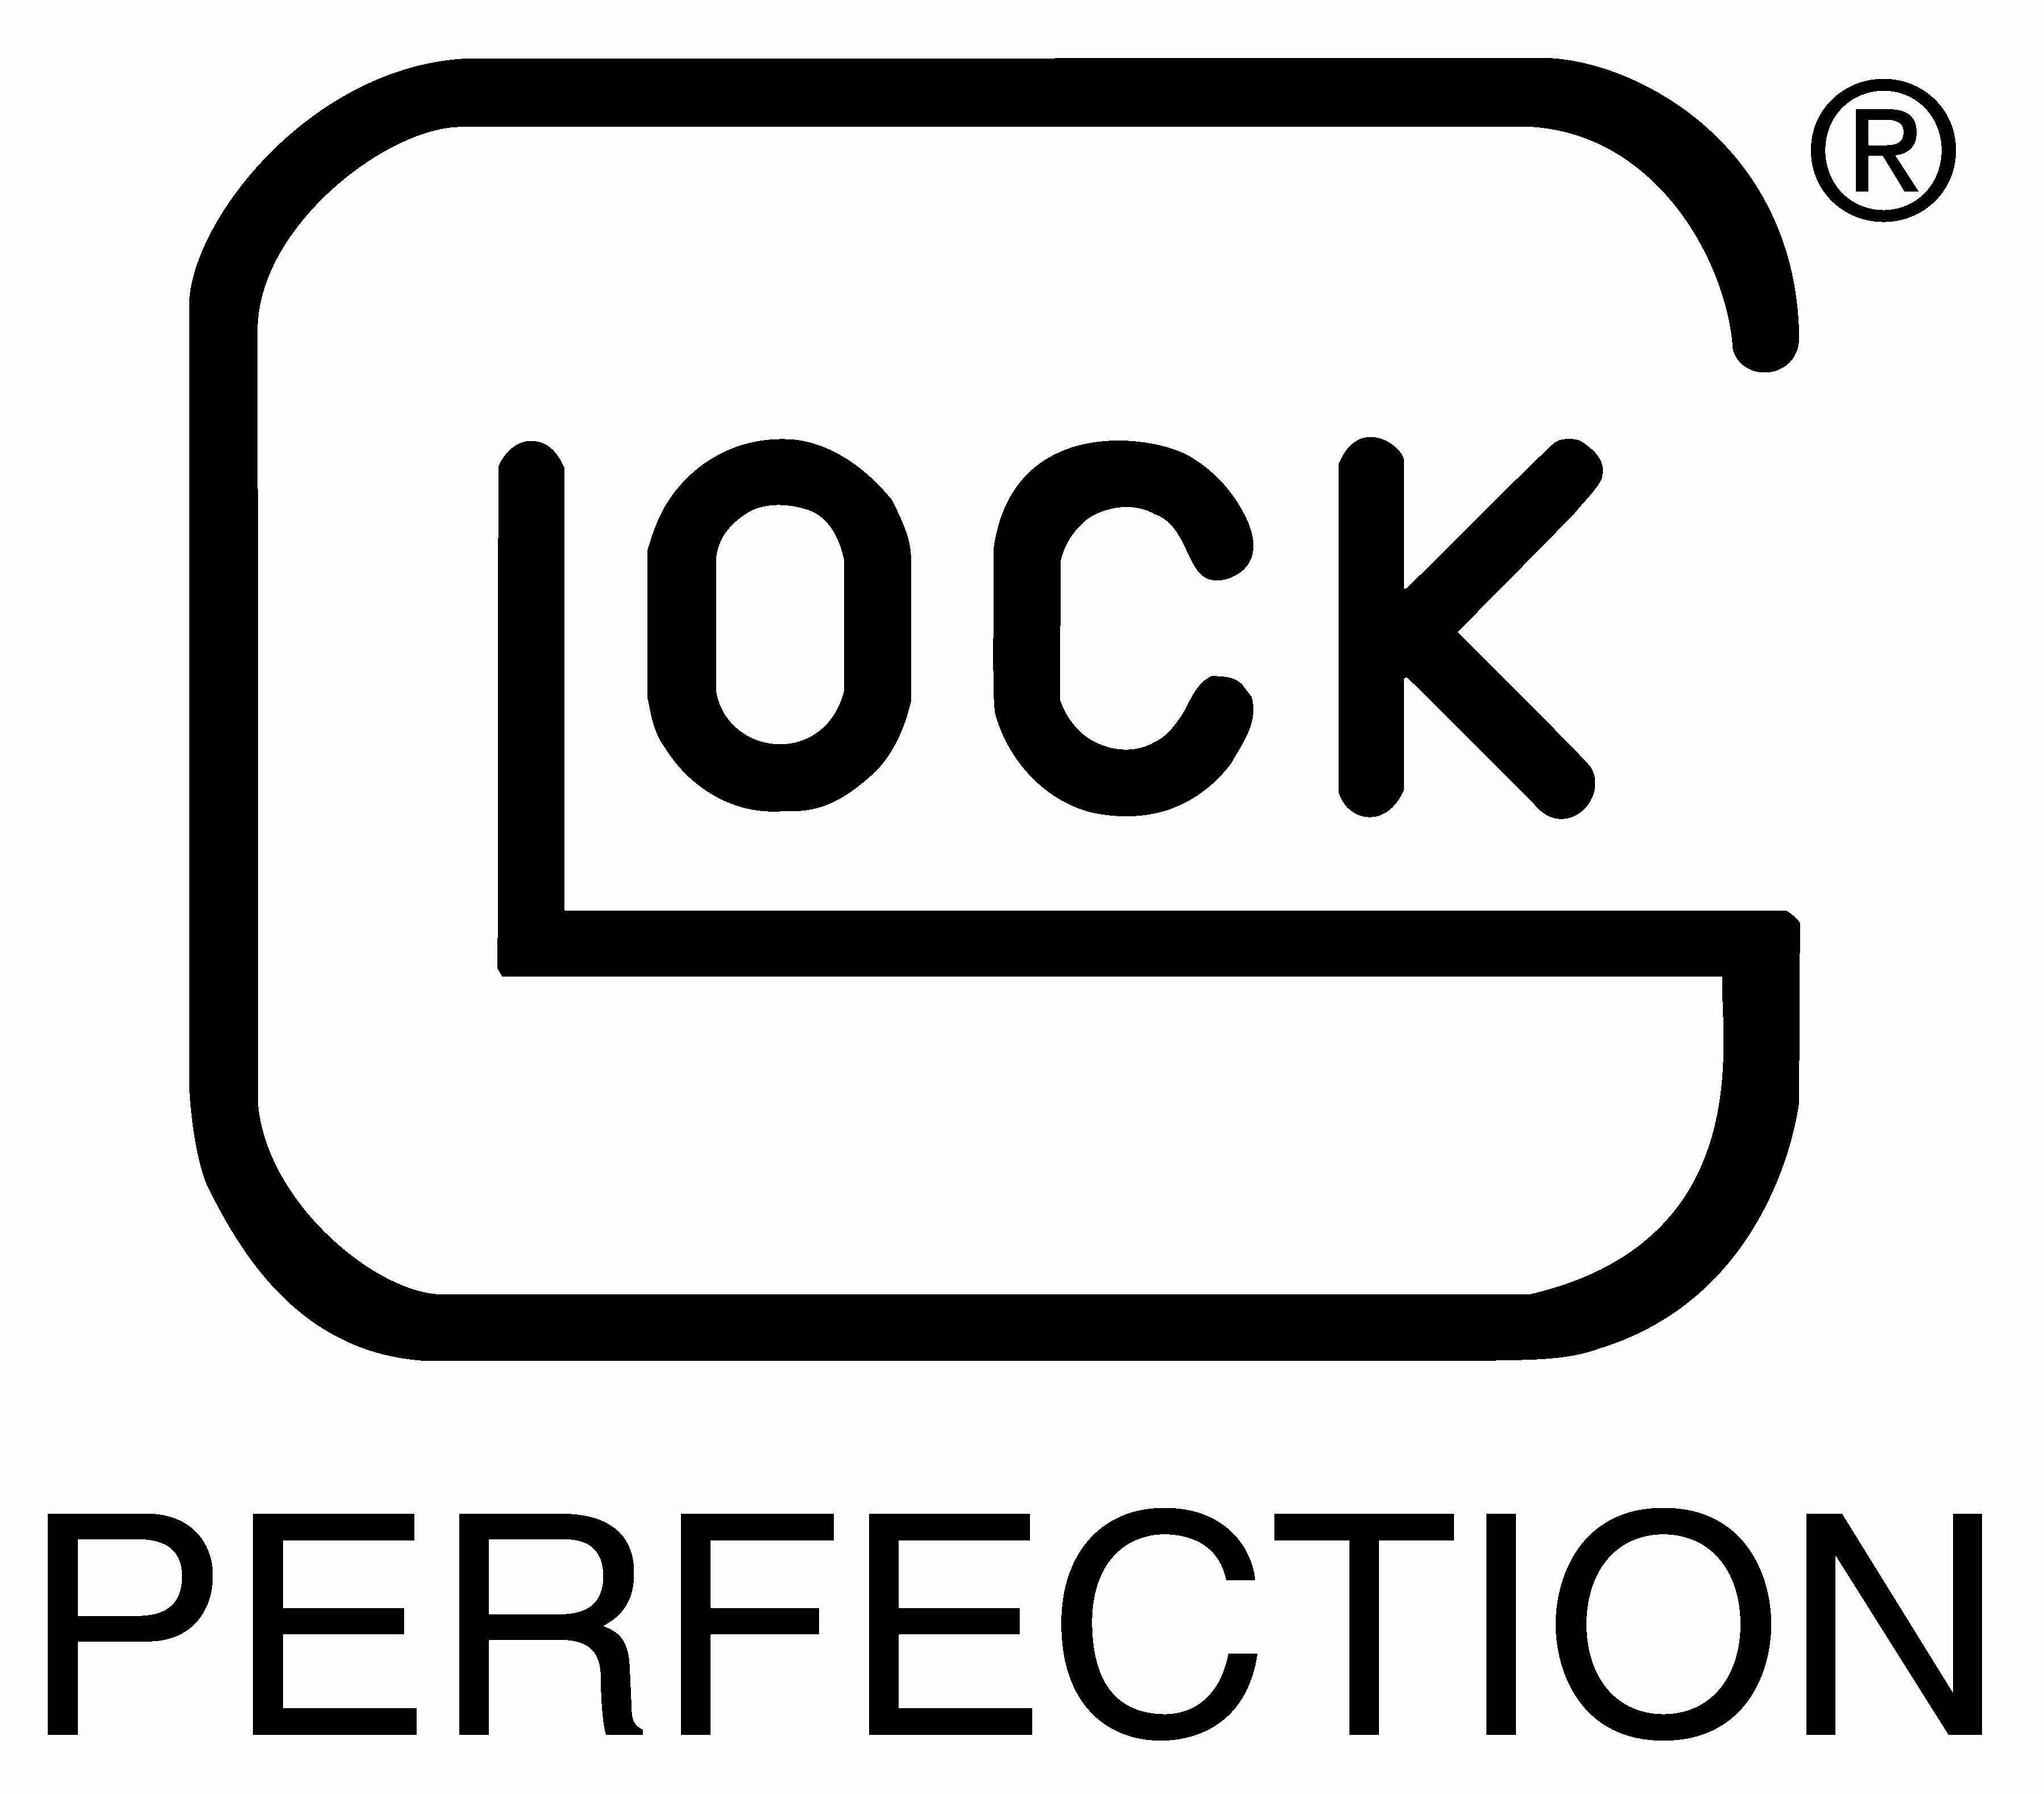 Glock logo HD wallpapers  Pxfuel